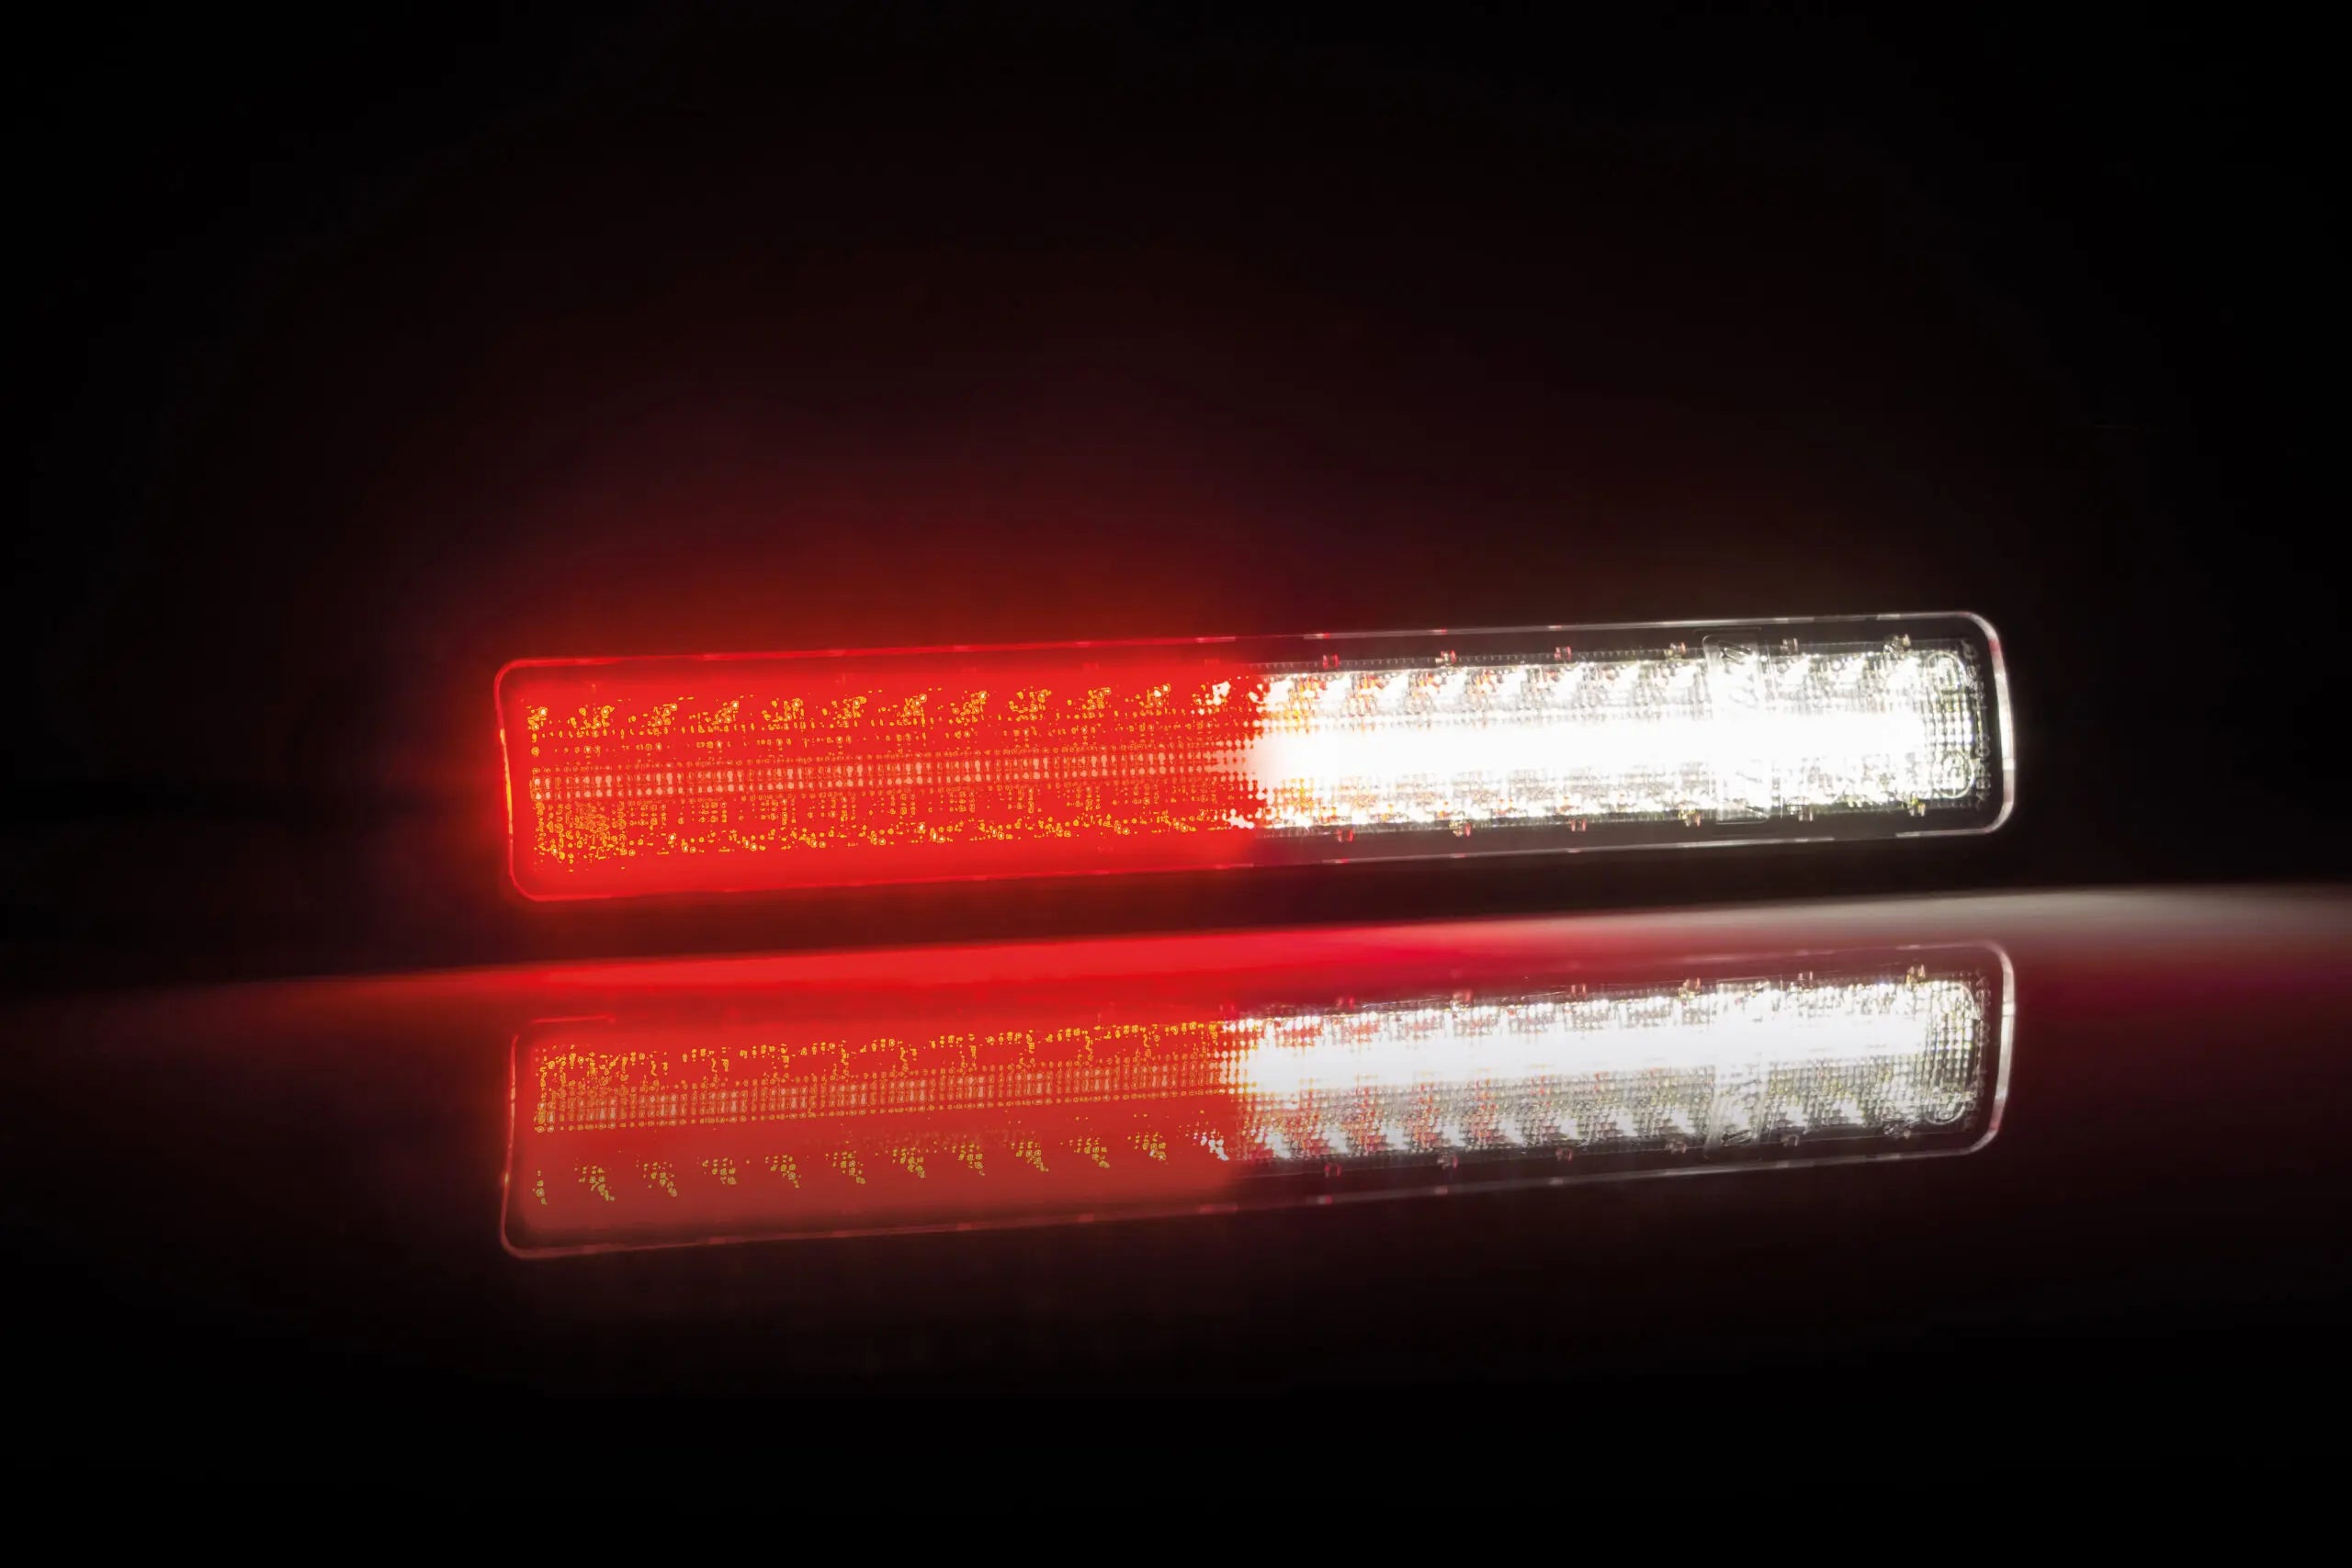 Acheter Feu arrière LED pour remorque Fristom FT130 / Effet néon 5  fonctions en gros et au détail